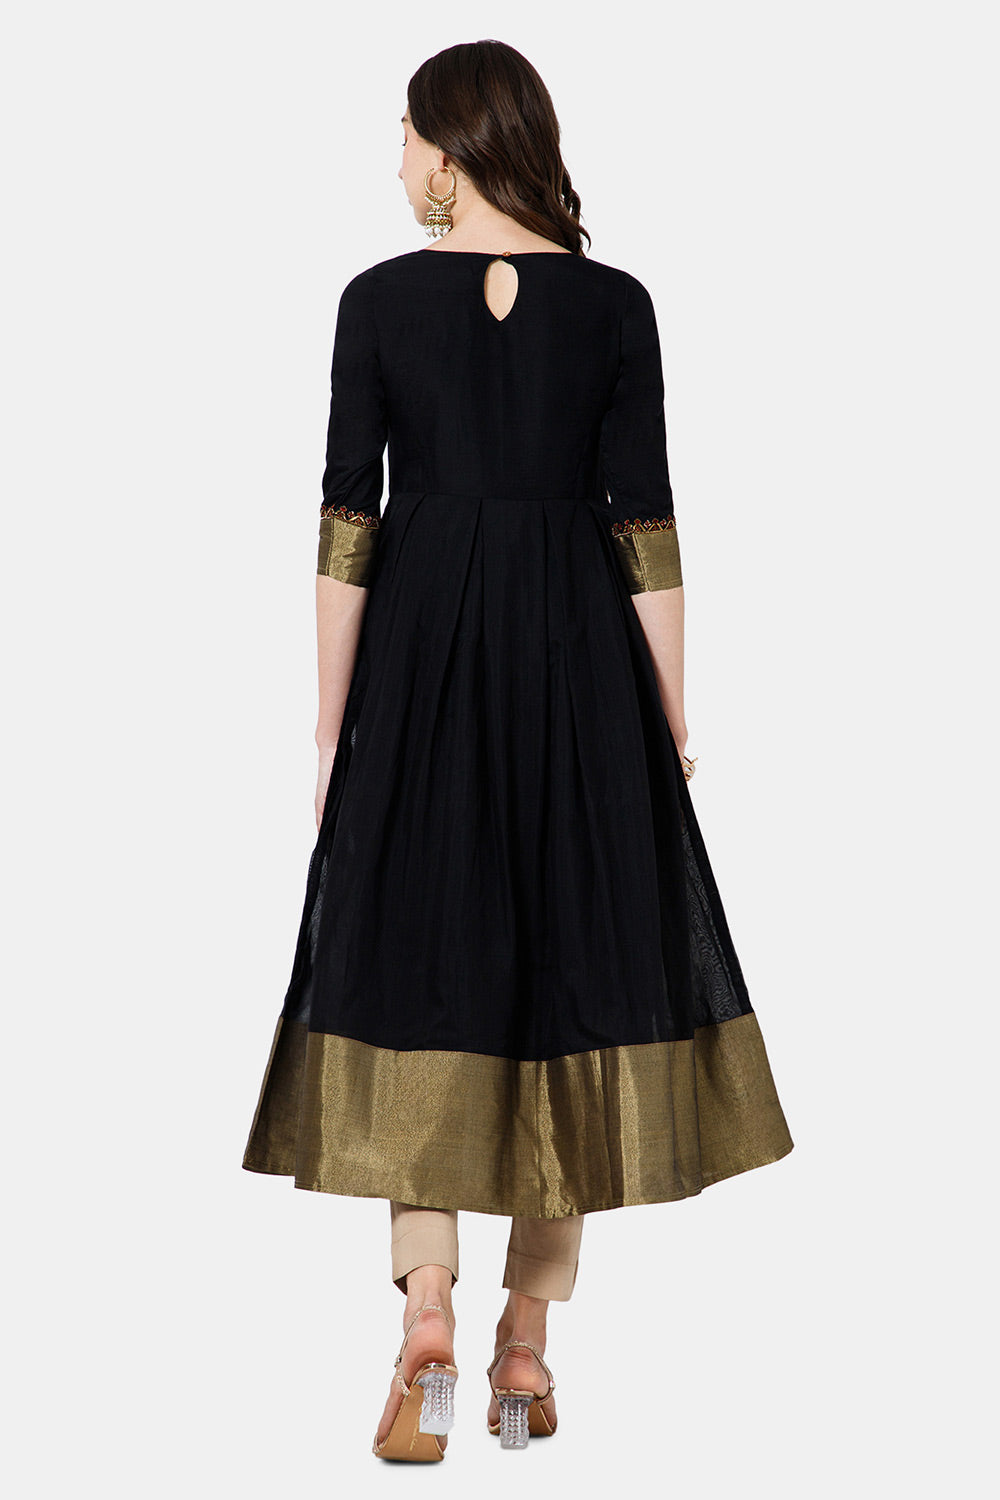 Mythri Women's Ethnic Wear Round Neck Anarkali dress with 3/4 sleeve - Black - KU49